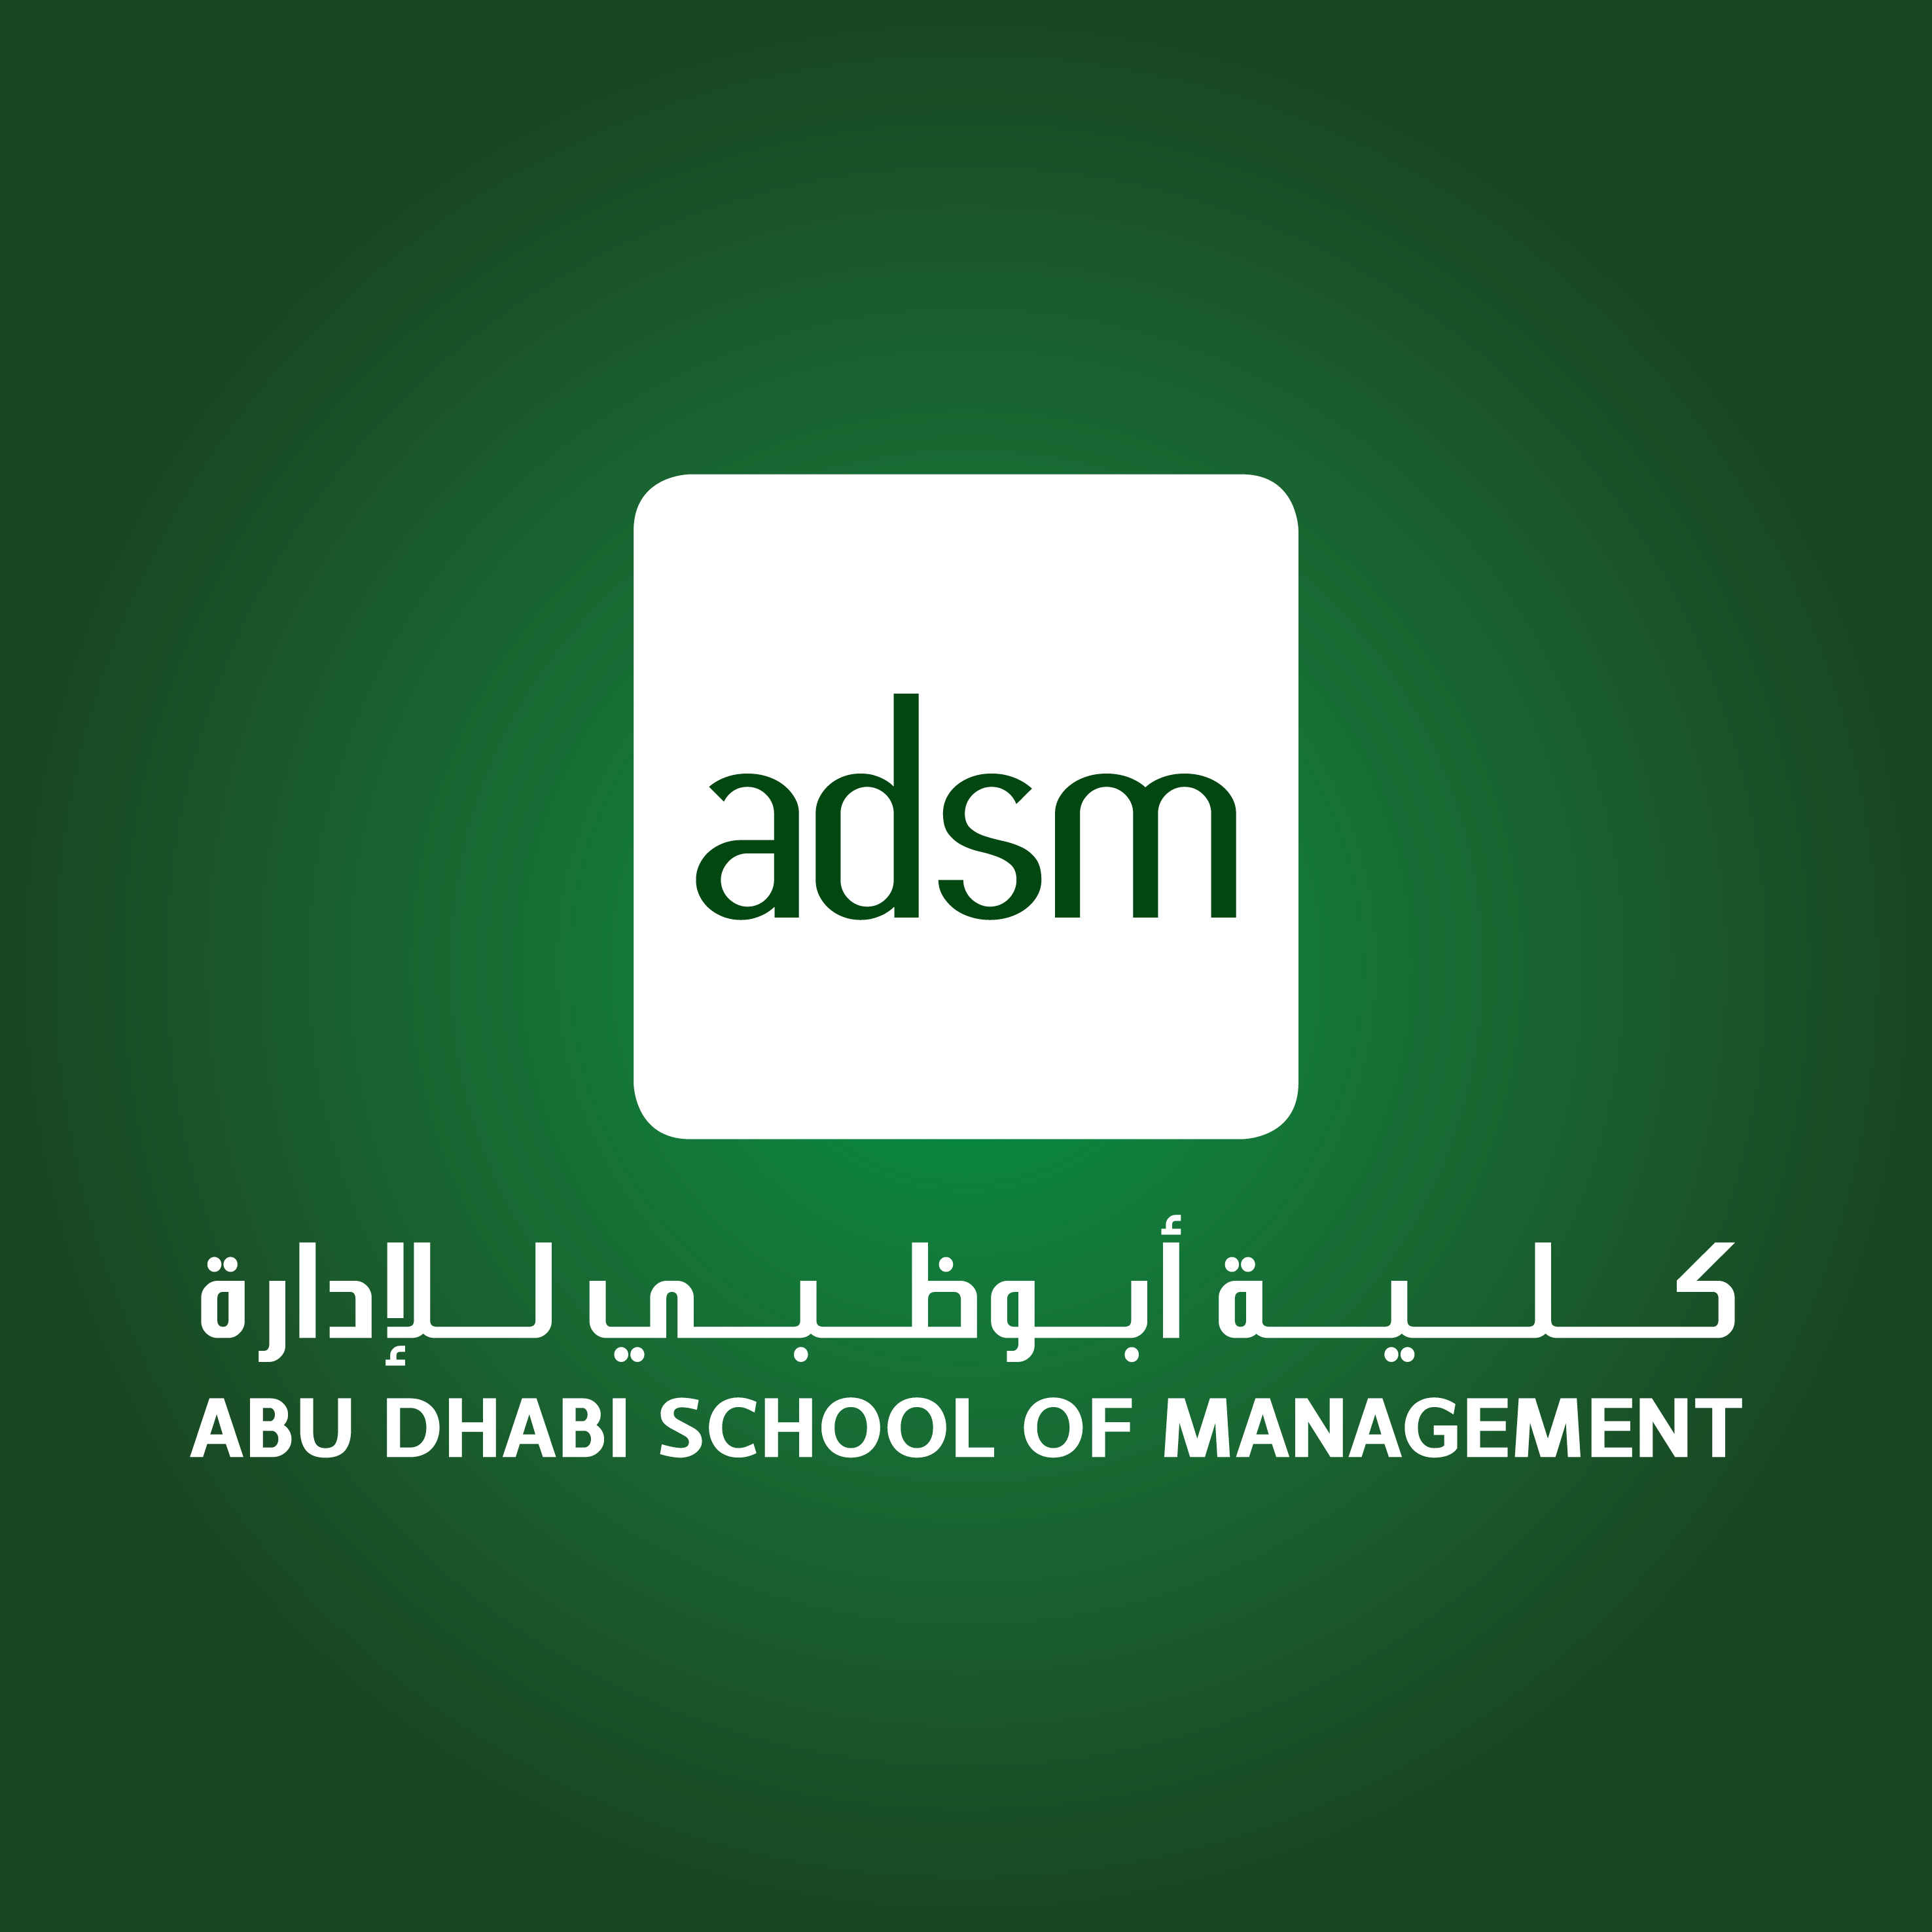 Abu Dhabi School of Management Logo